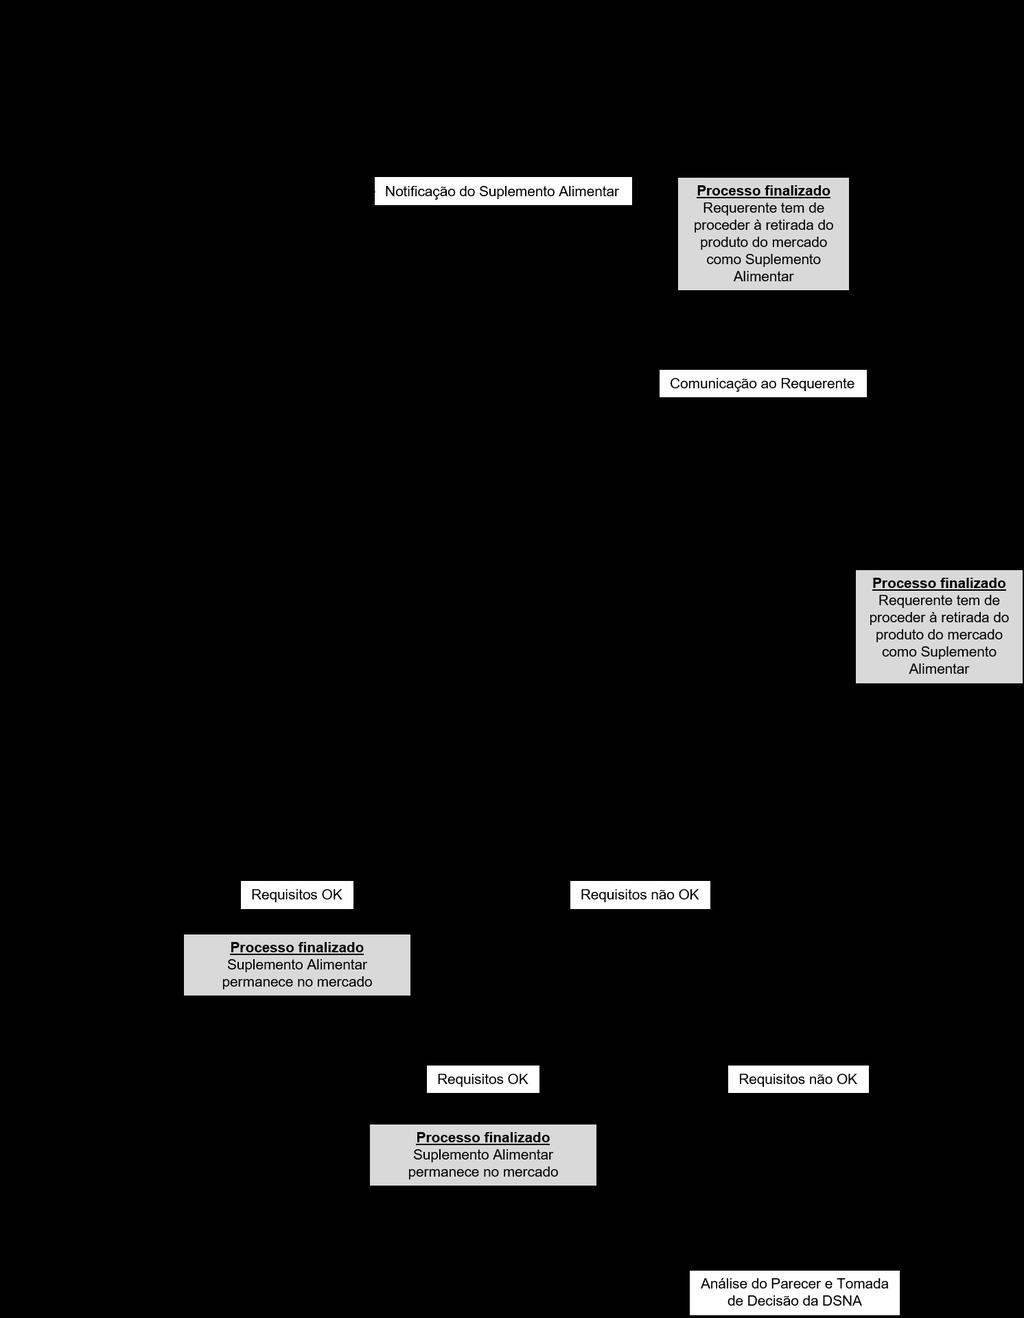 Figura 4 - Esquema do procedimento de análise de notificações de suplementos alimentares (Adaptado de: Fluxograma de